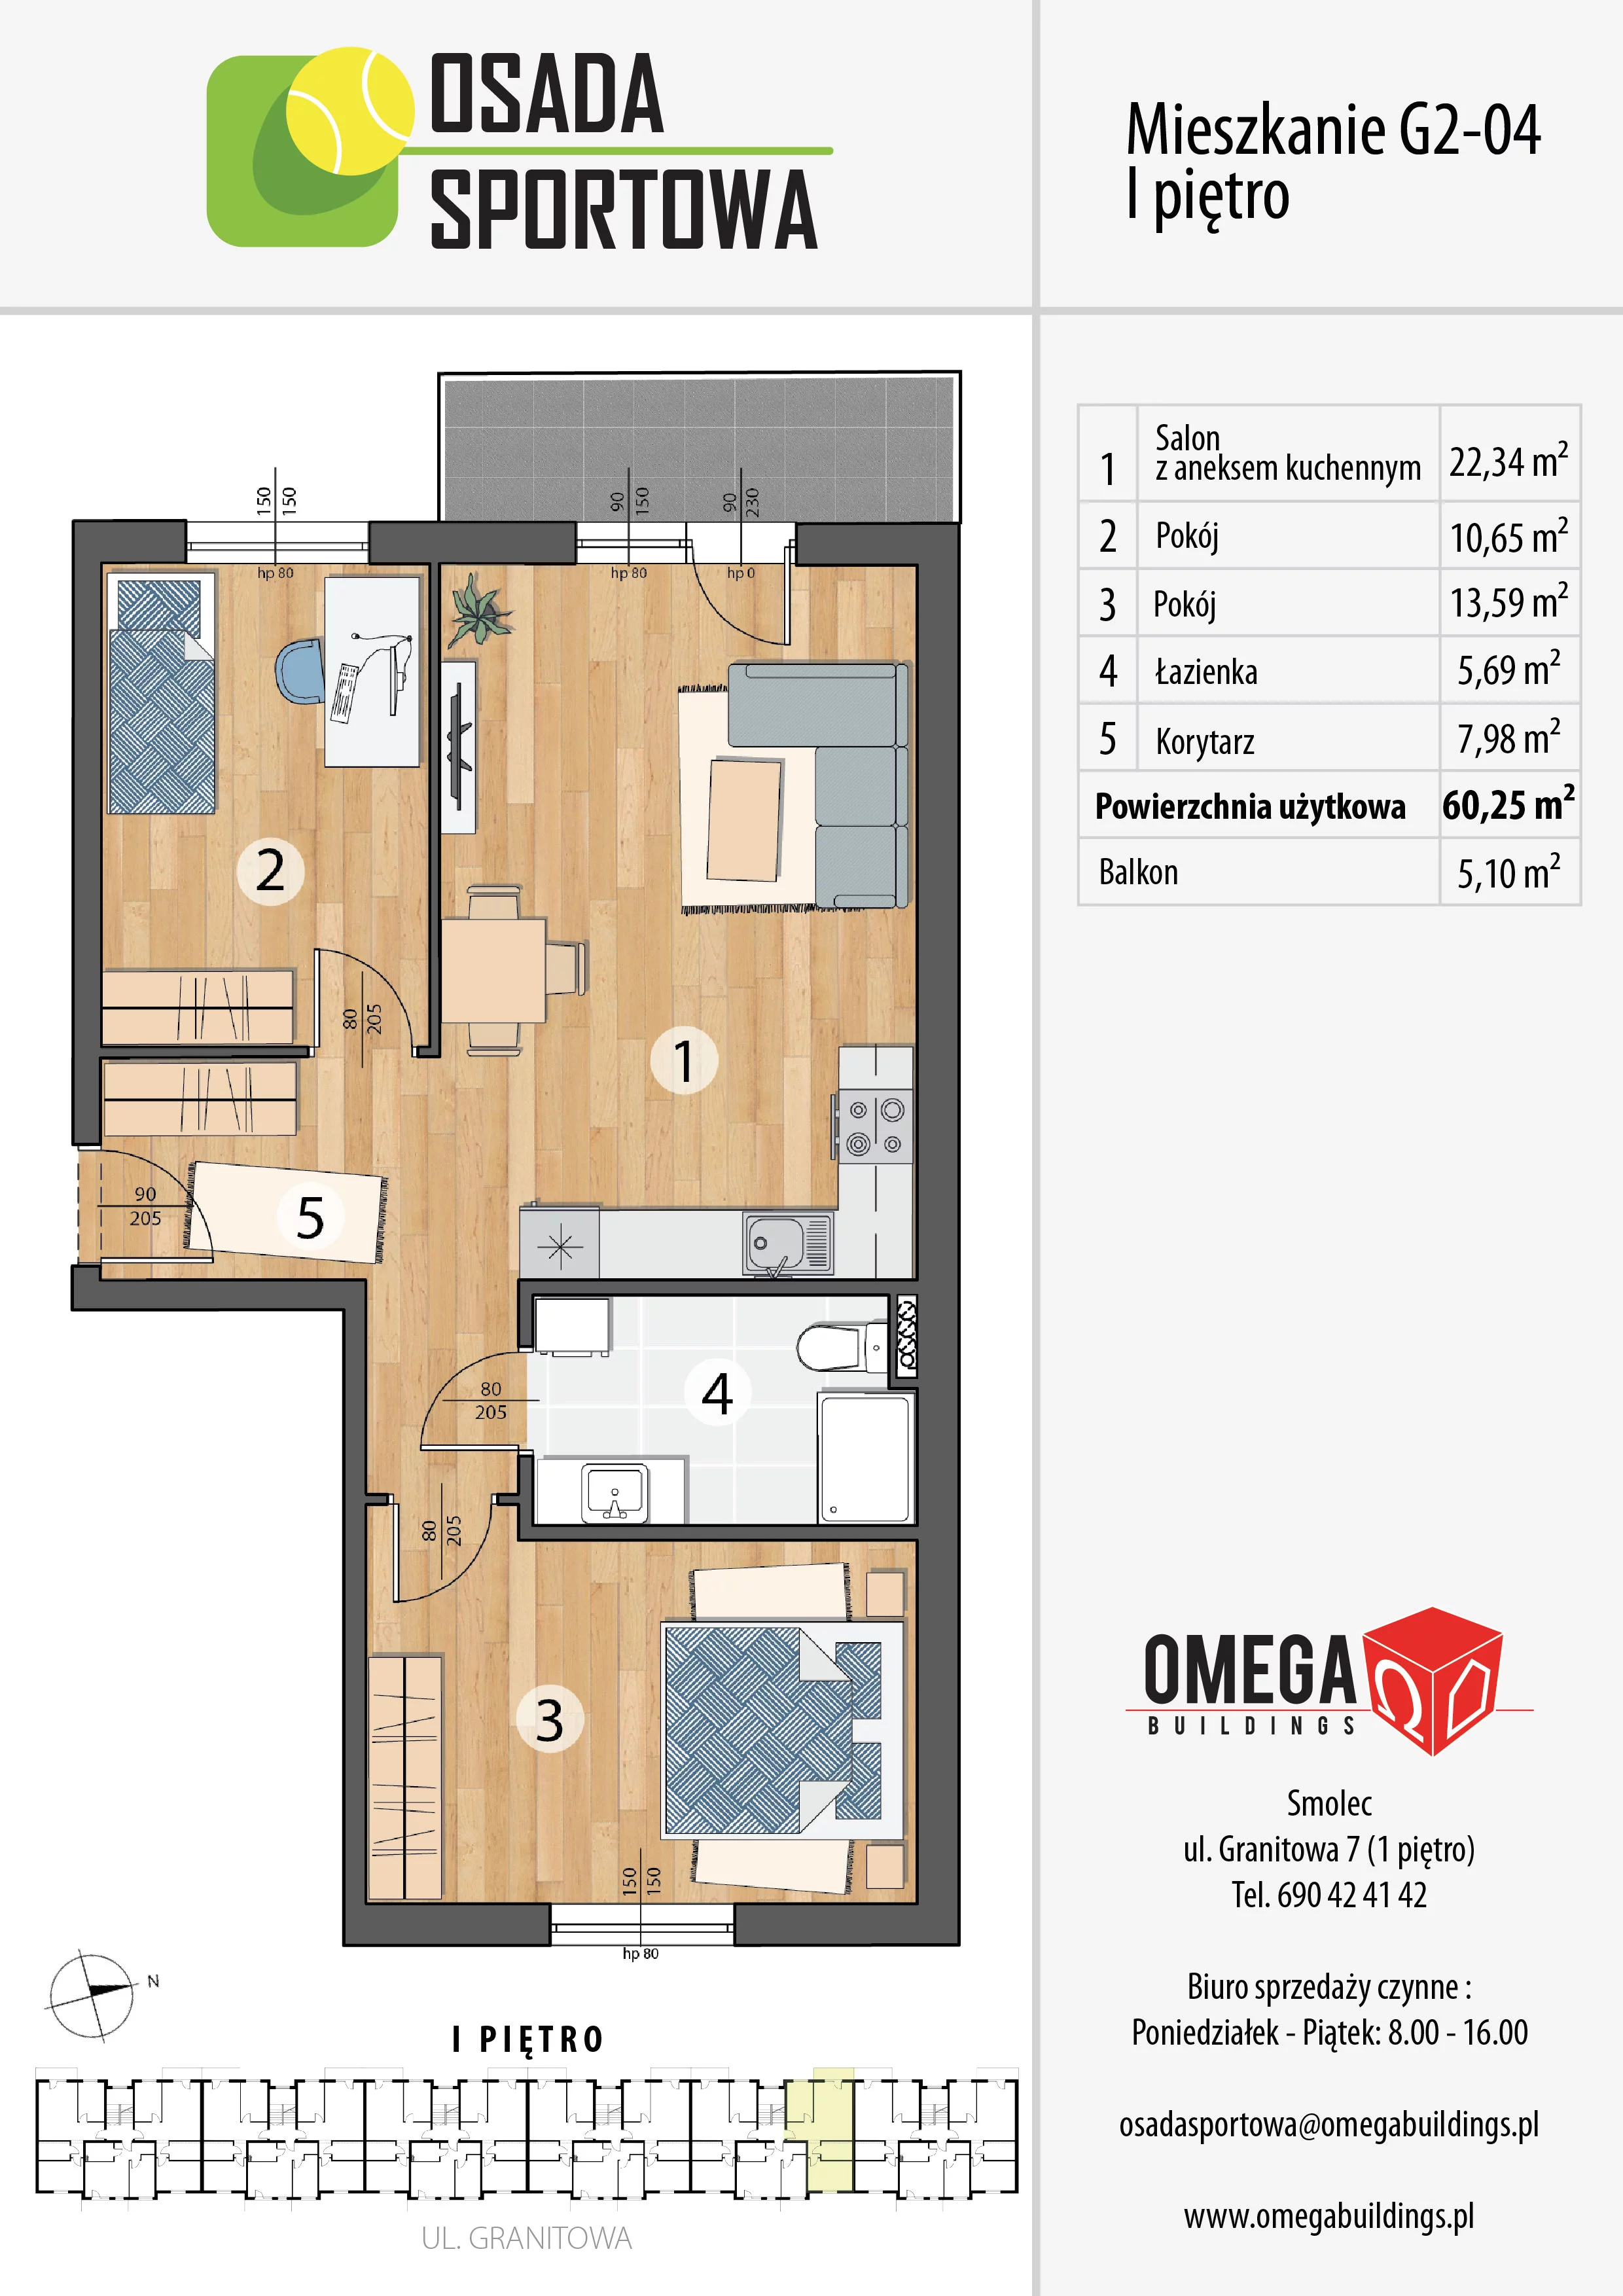 Mieszkanie 60,25 m², piętro 1, oferta nr G2-04, Osada Sportowa Budynek G, Smolec, ul. Granitowa 52-62